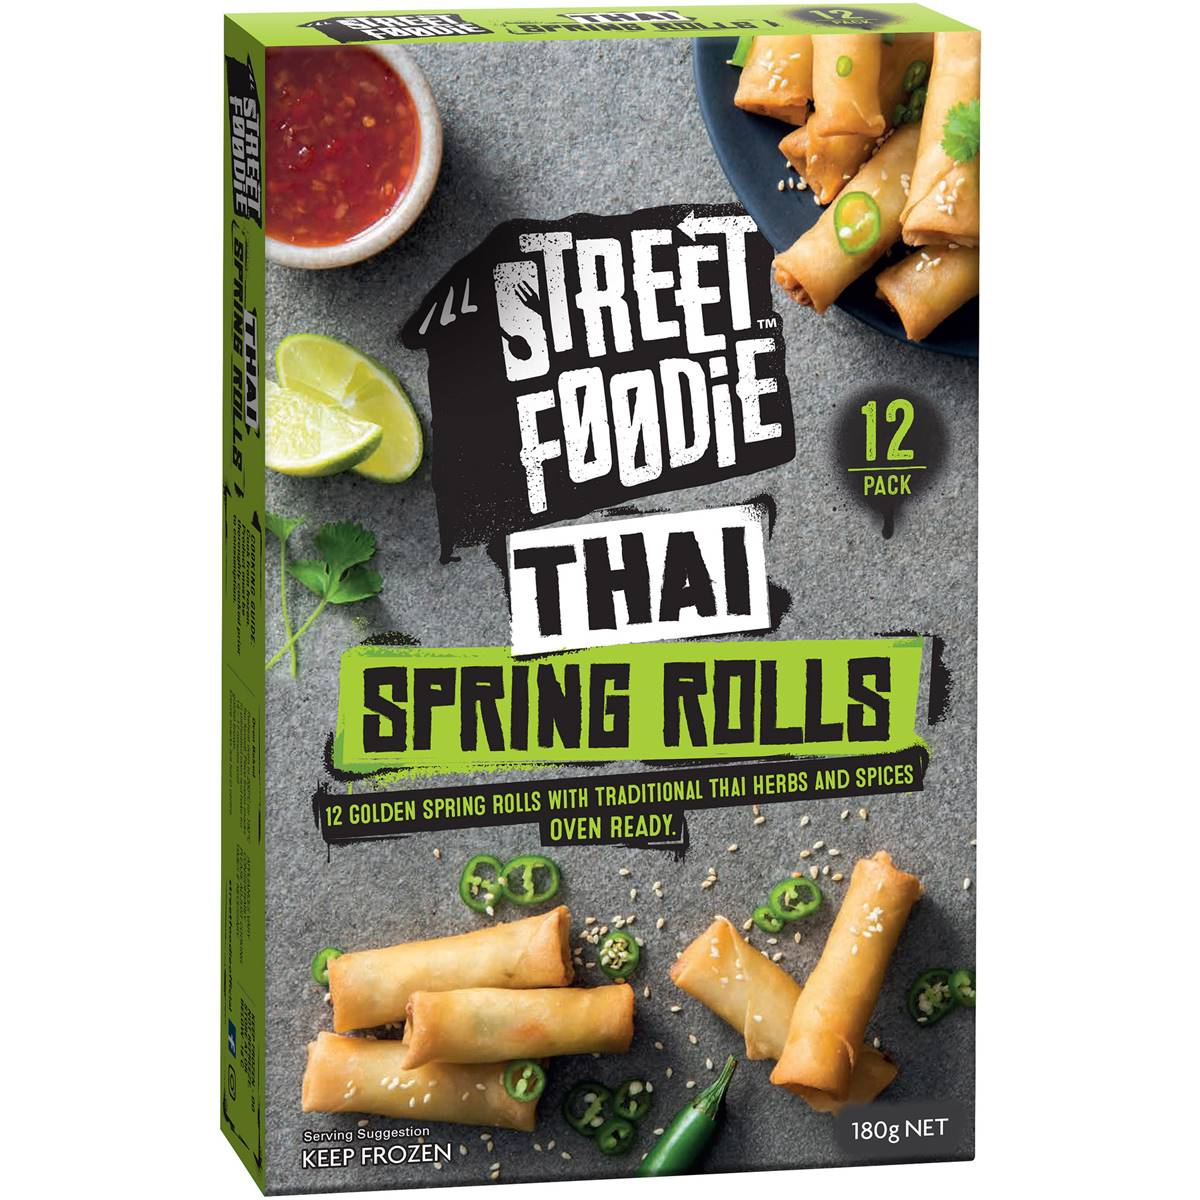 Calories in Street Foodie Thai Spring Rolls